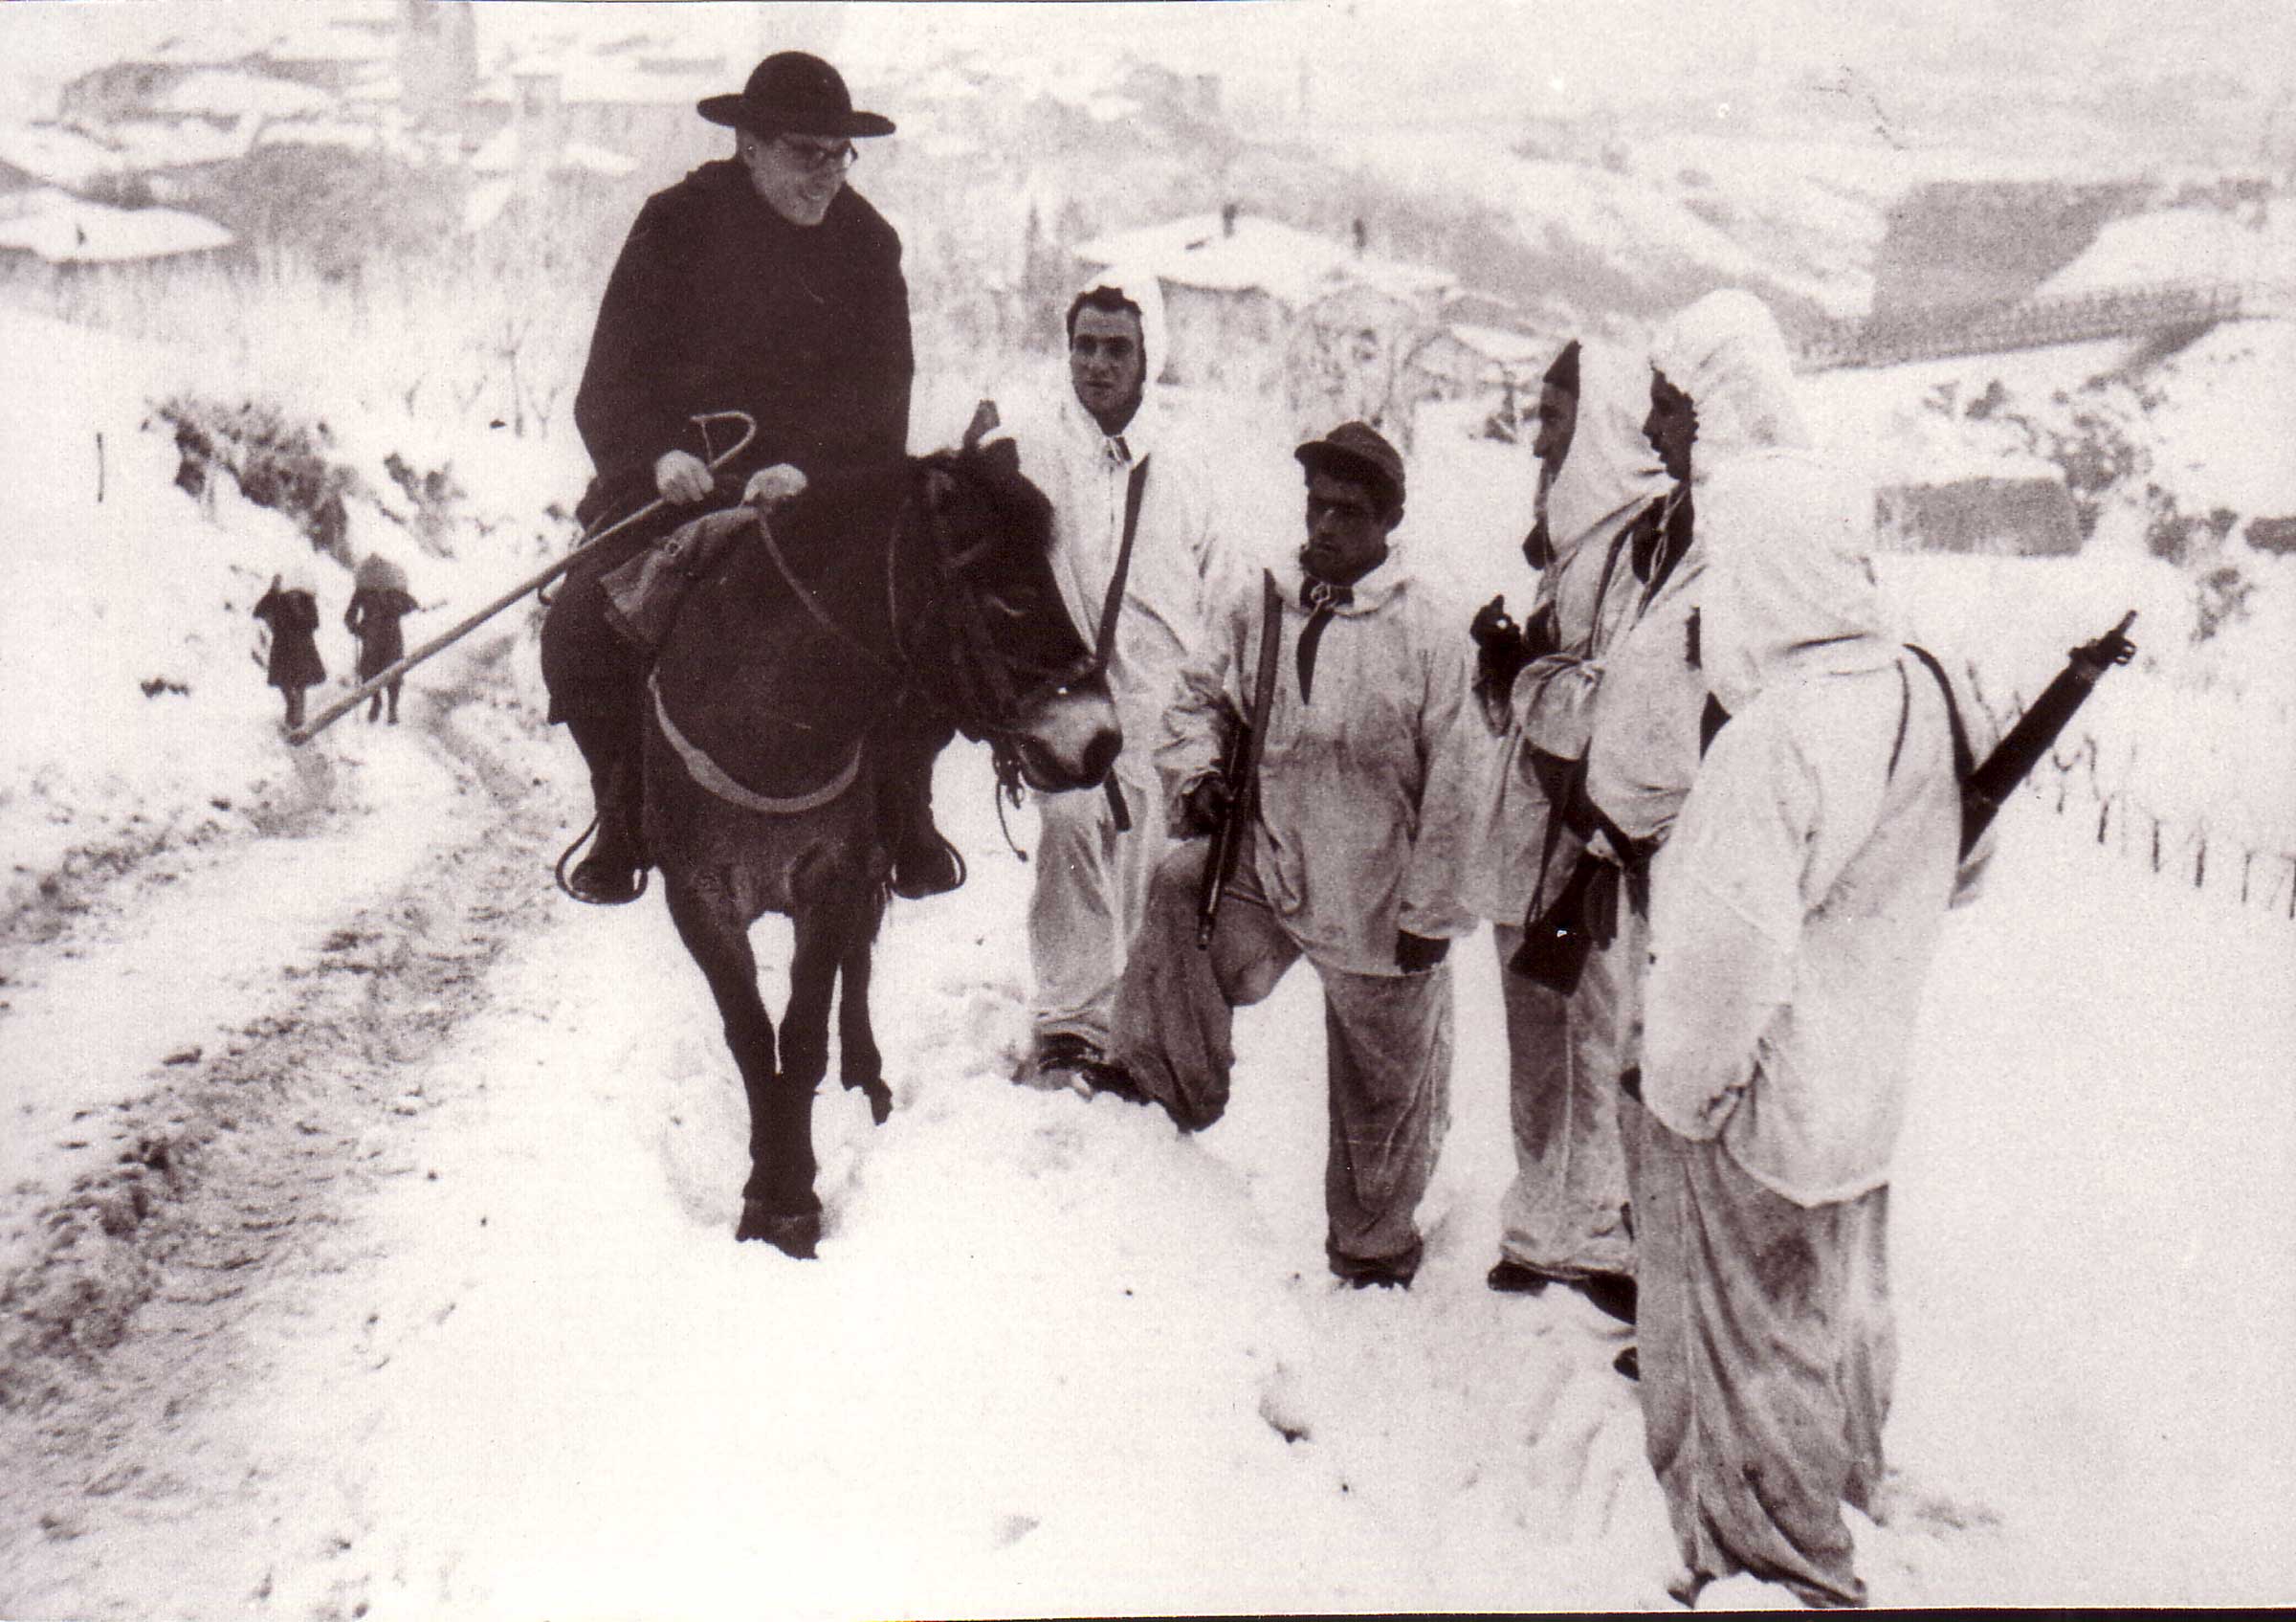 Partigiani in perlustrazione nella zona di Fontanelice salutano il parroco sommeggiato (Fontanelice, inverno 1944-1945)